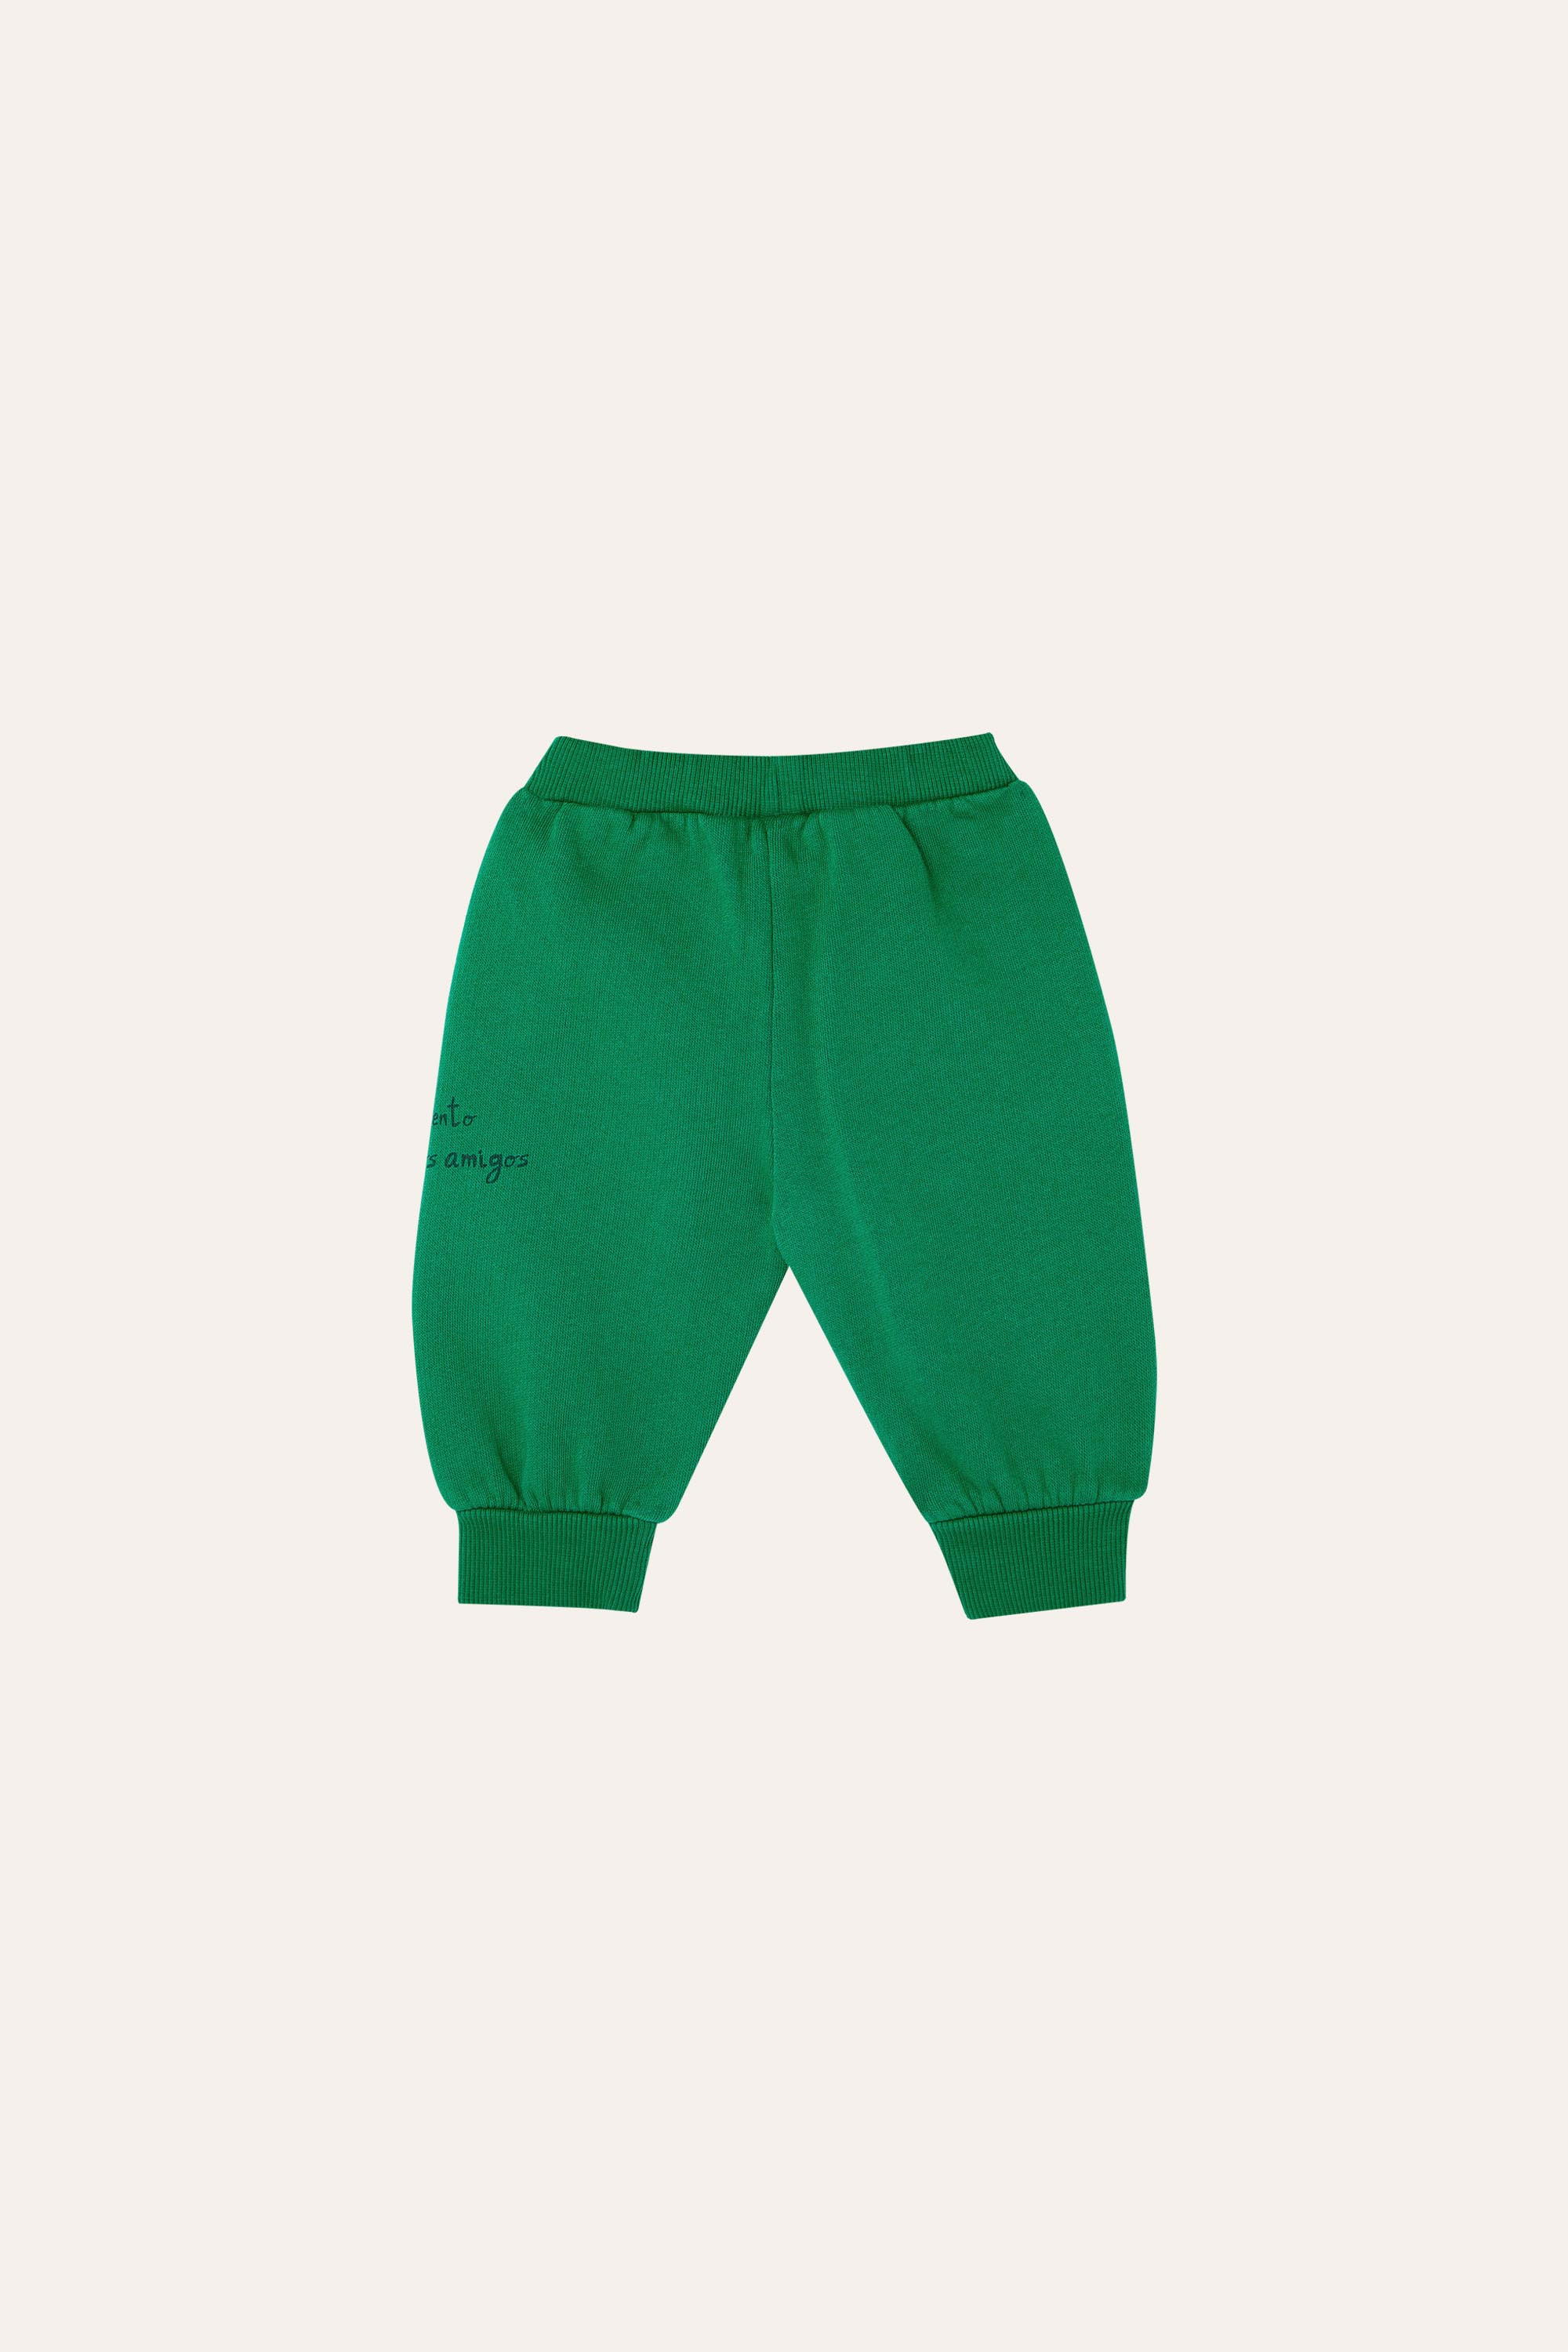 Green - Pantalon Los Amigos